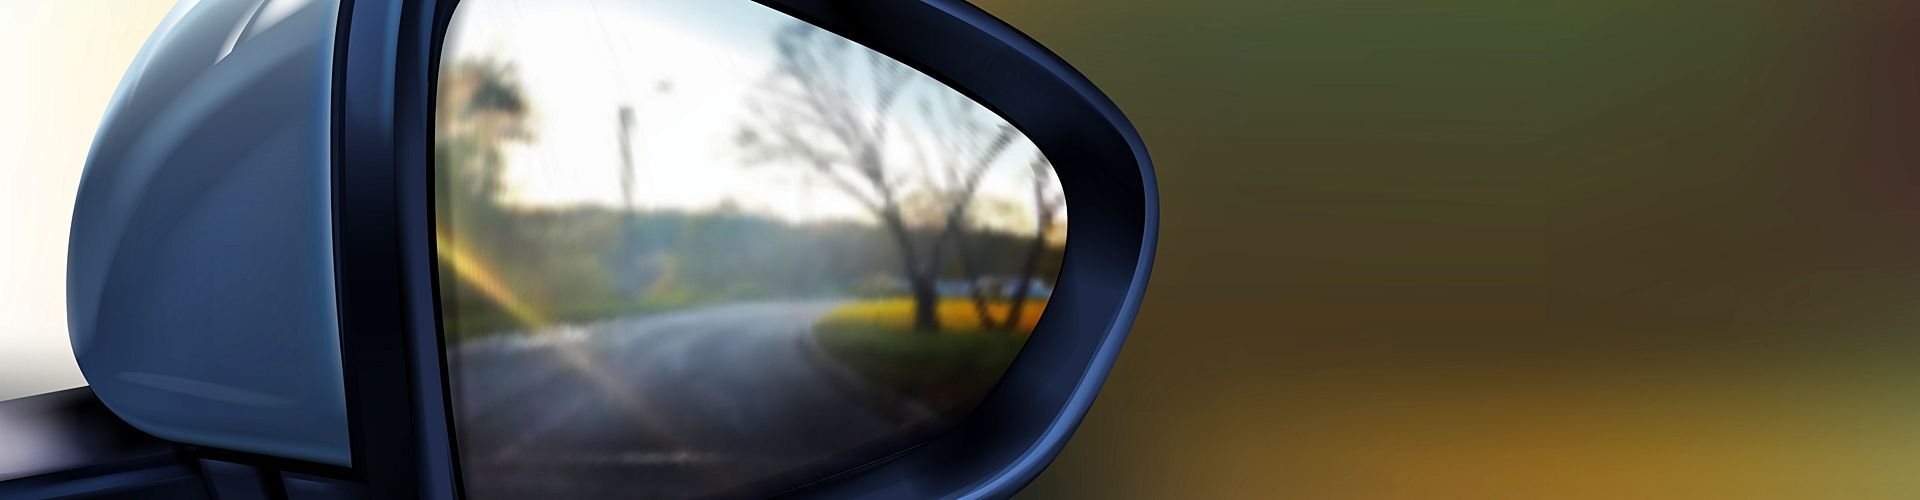 Cómo pegar el espejo retrovisor exterior del coche?